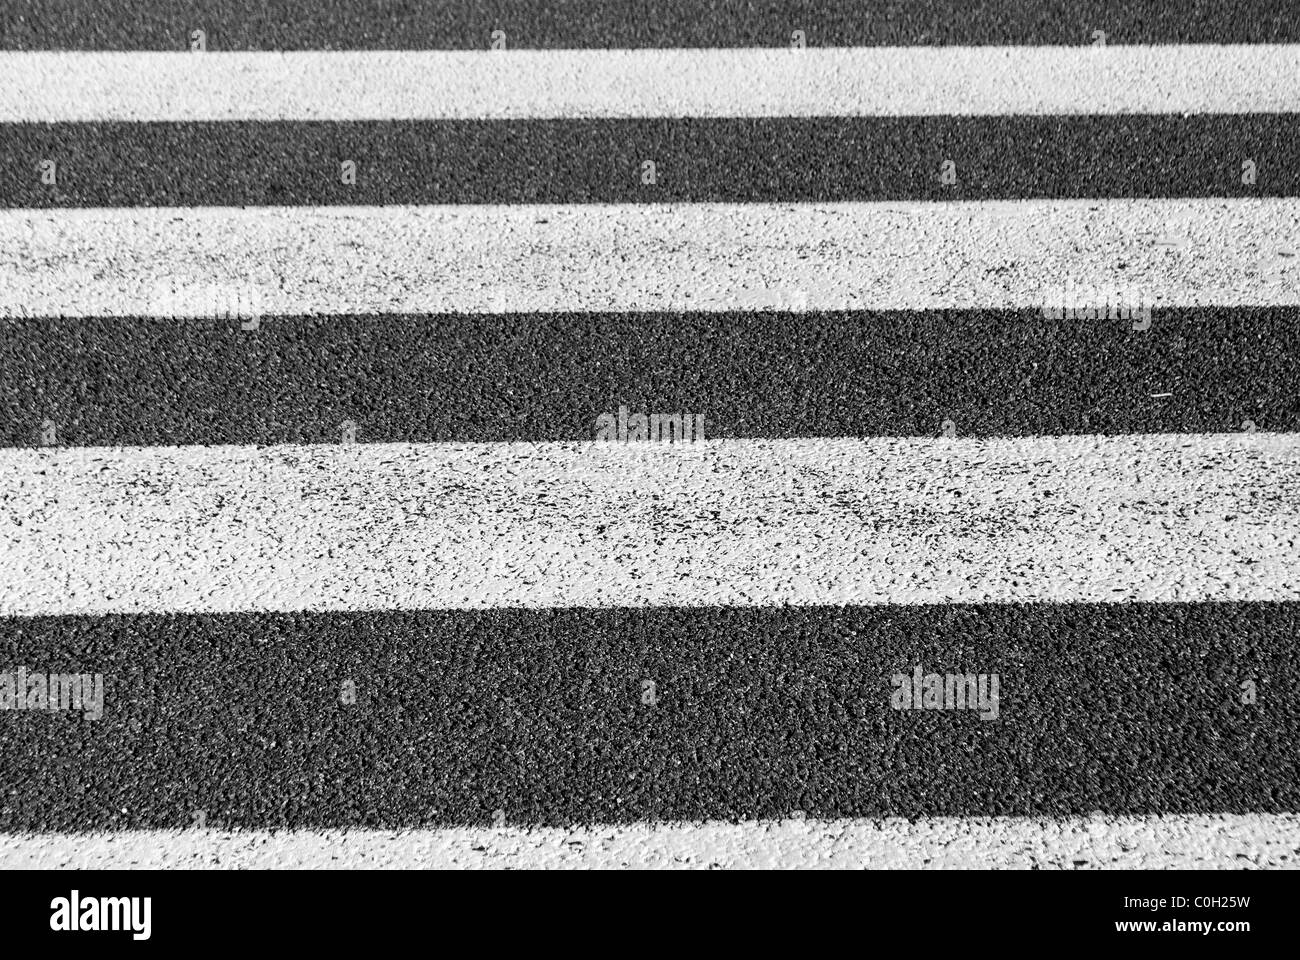 crosswalks, white on black asphalt Stock Photo